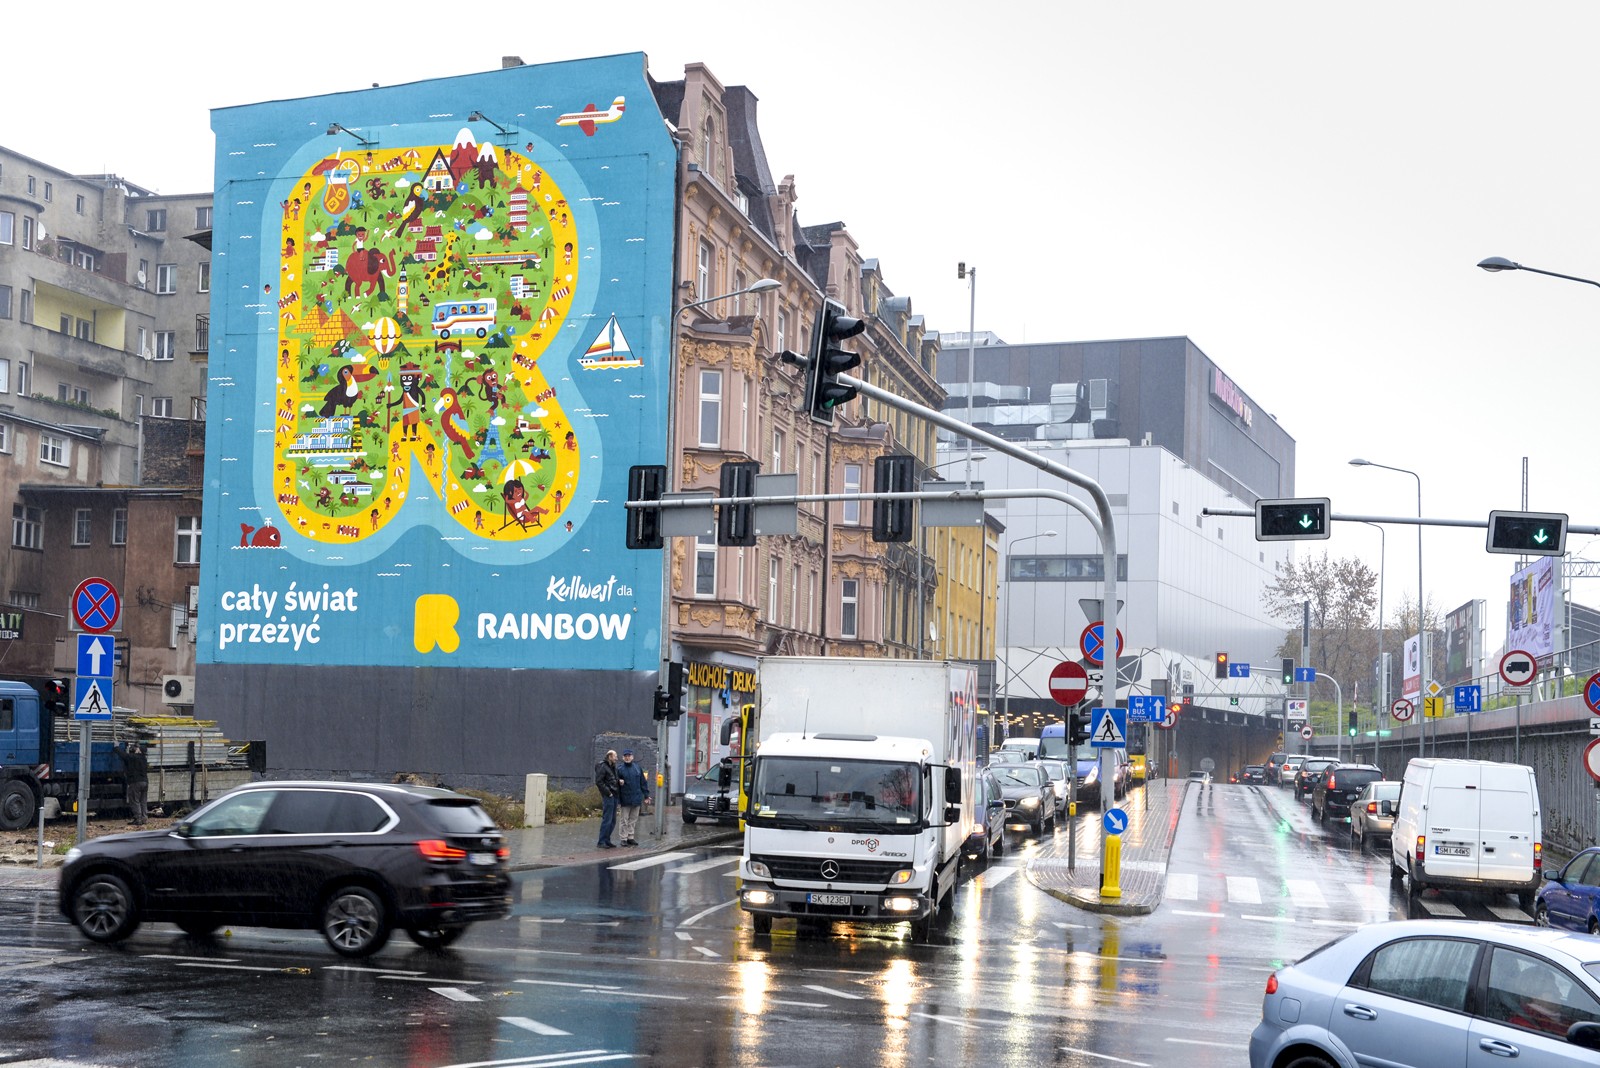 Ręcznie malowana reklama Rainbow Tours w Katowicach | Kampania dla biura podróży Rainbow | Portfolio